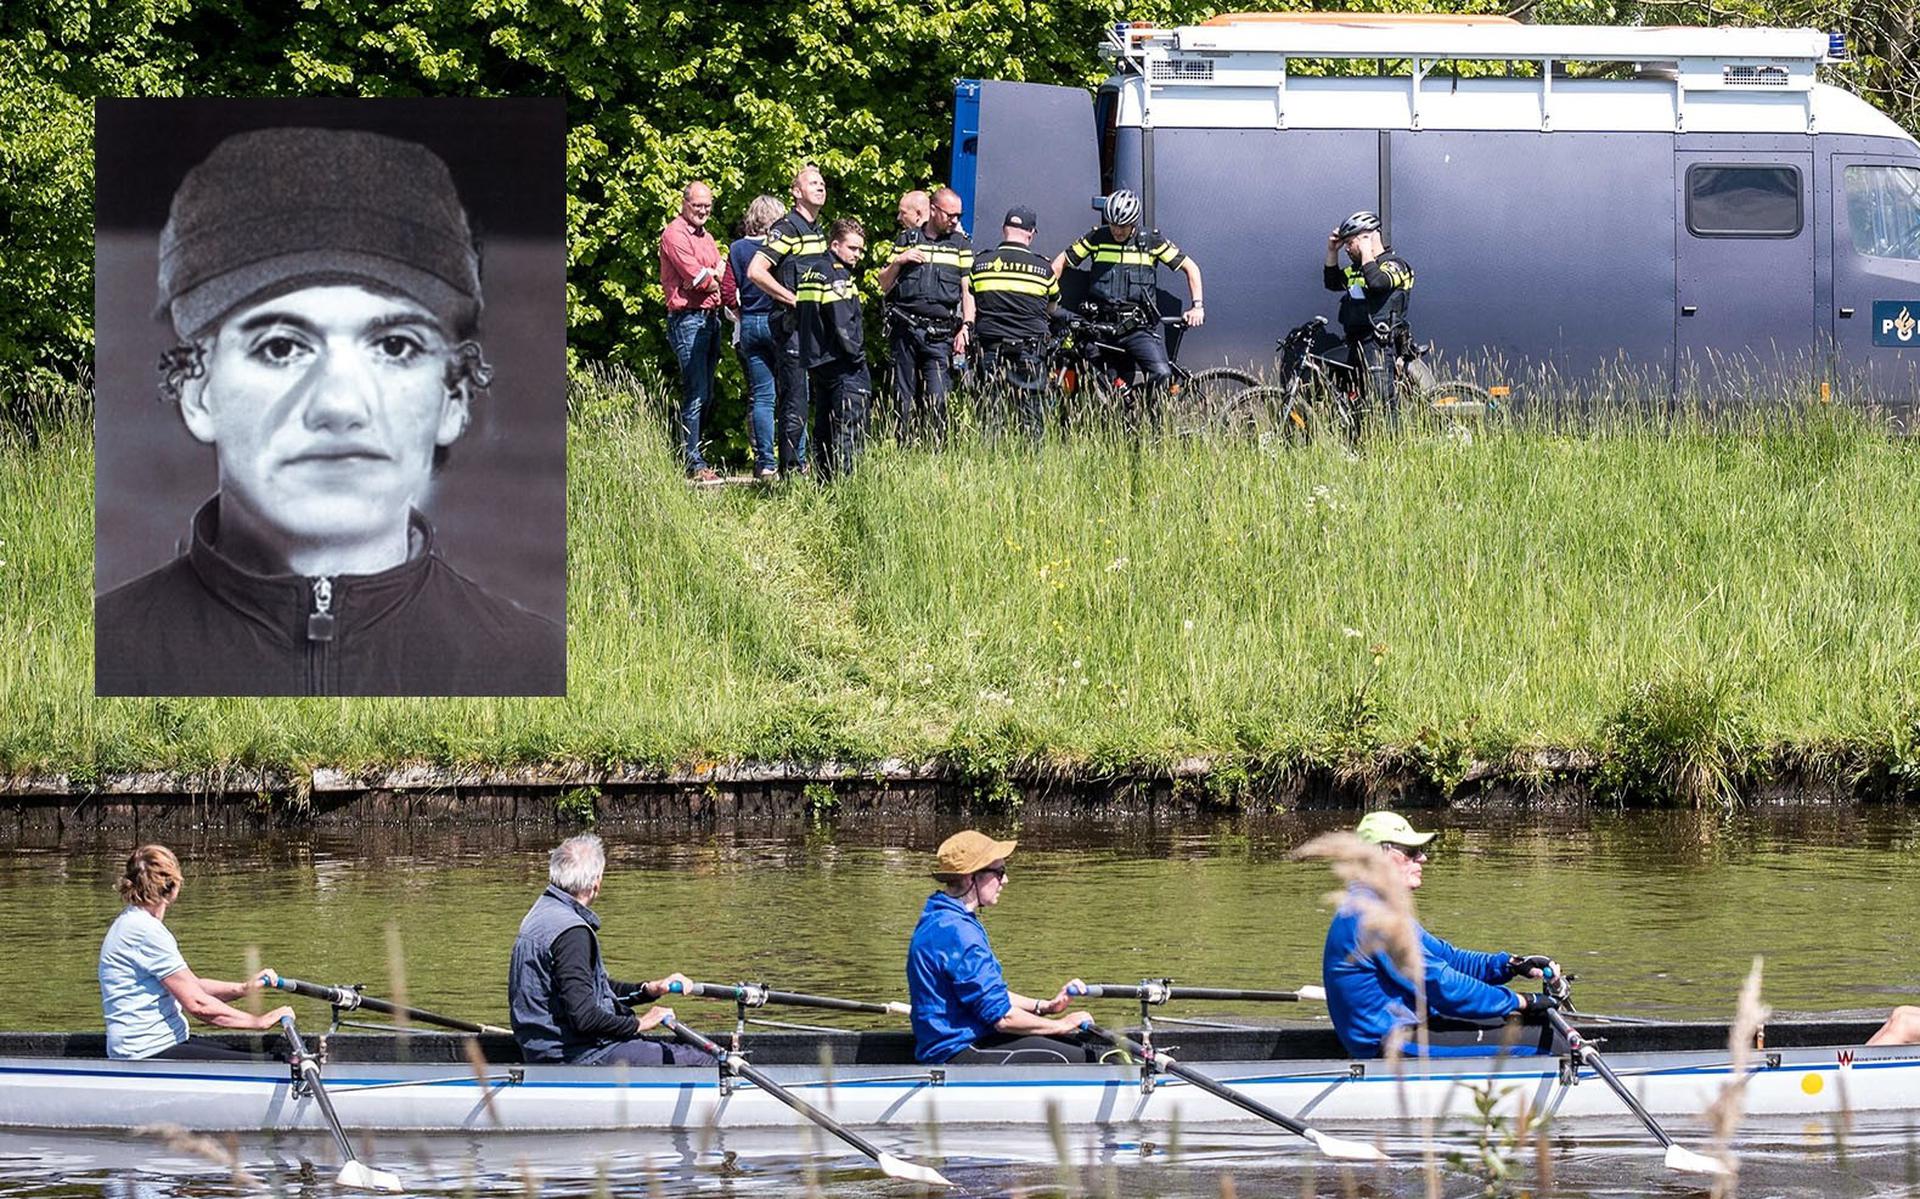 De politie doet onderzoek naar de moord op het Jaagpad in Groningen. Als inzet een compositietekening van de verdachte.